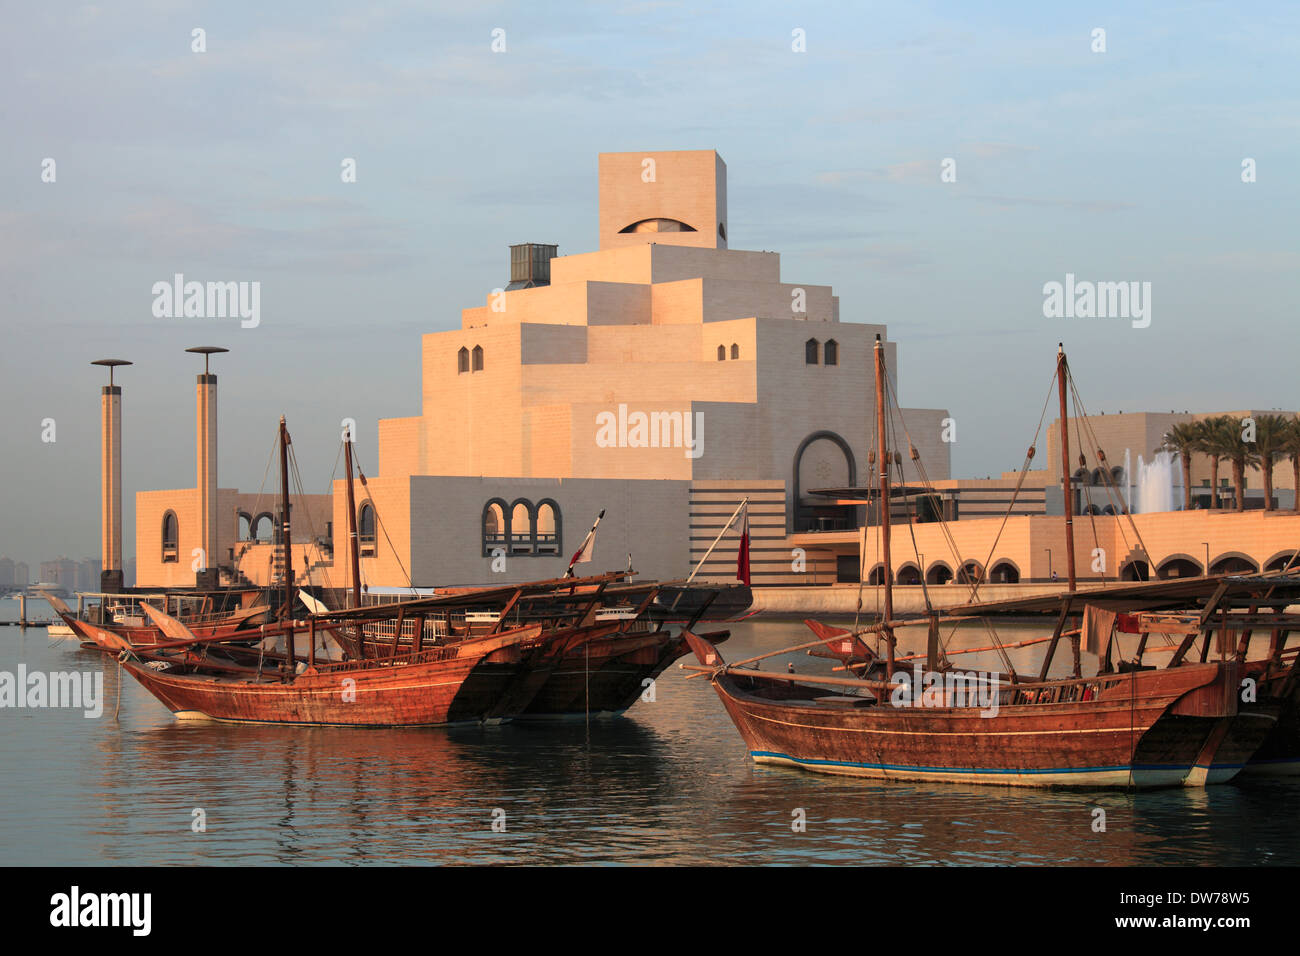 Qatar, Doha, Museum of Islamic Art, Stock Photo